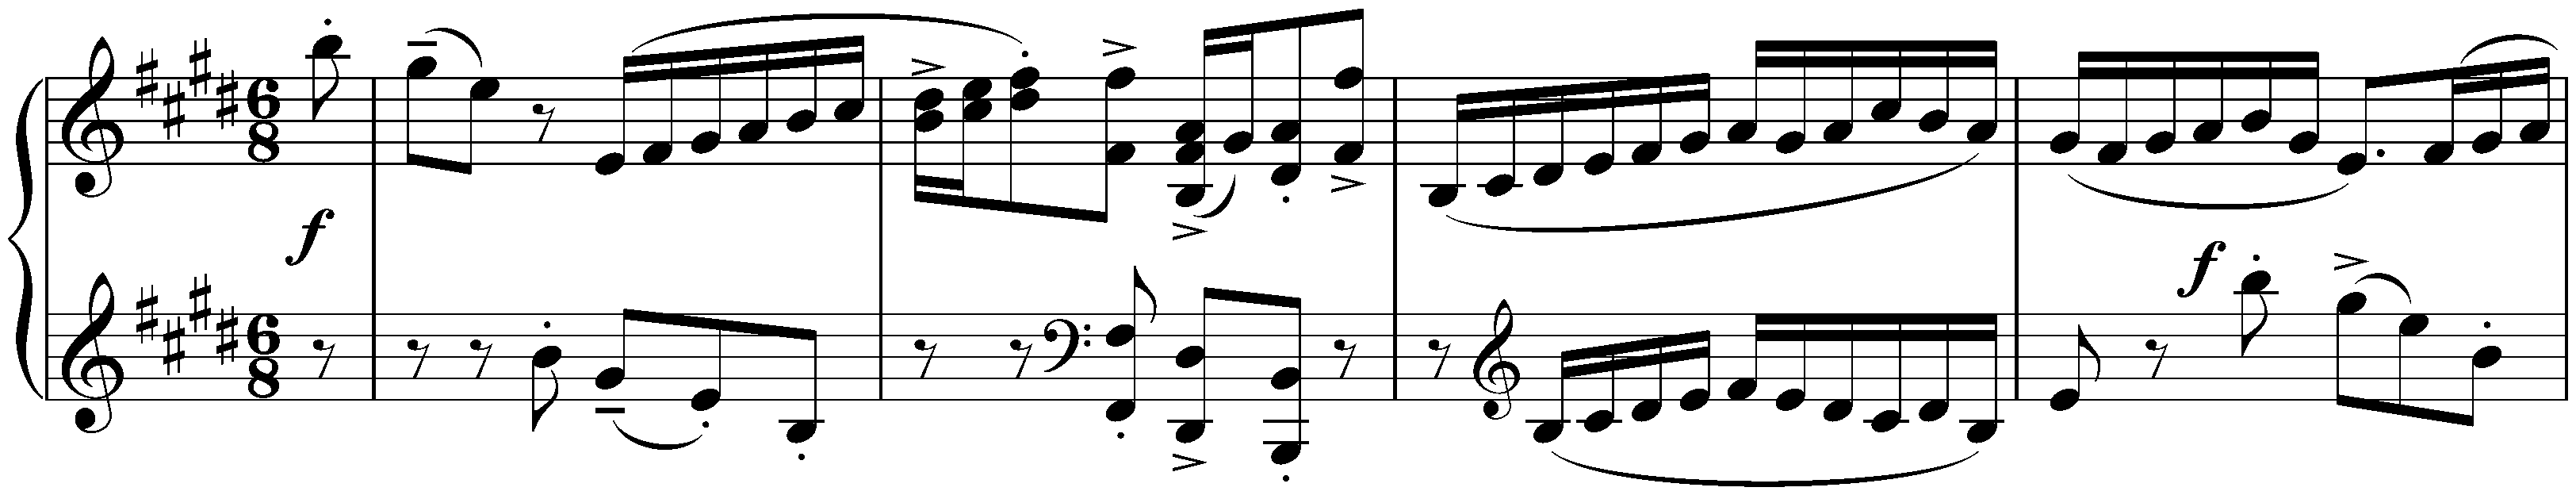 Prélude, Gavotte and Gigue from the Violin Partita in E major (Johann Sebastian Bach); 3. Gigue